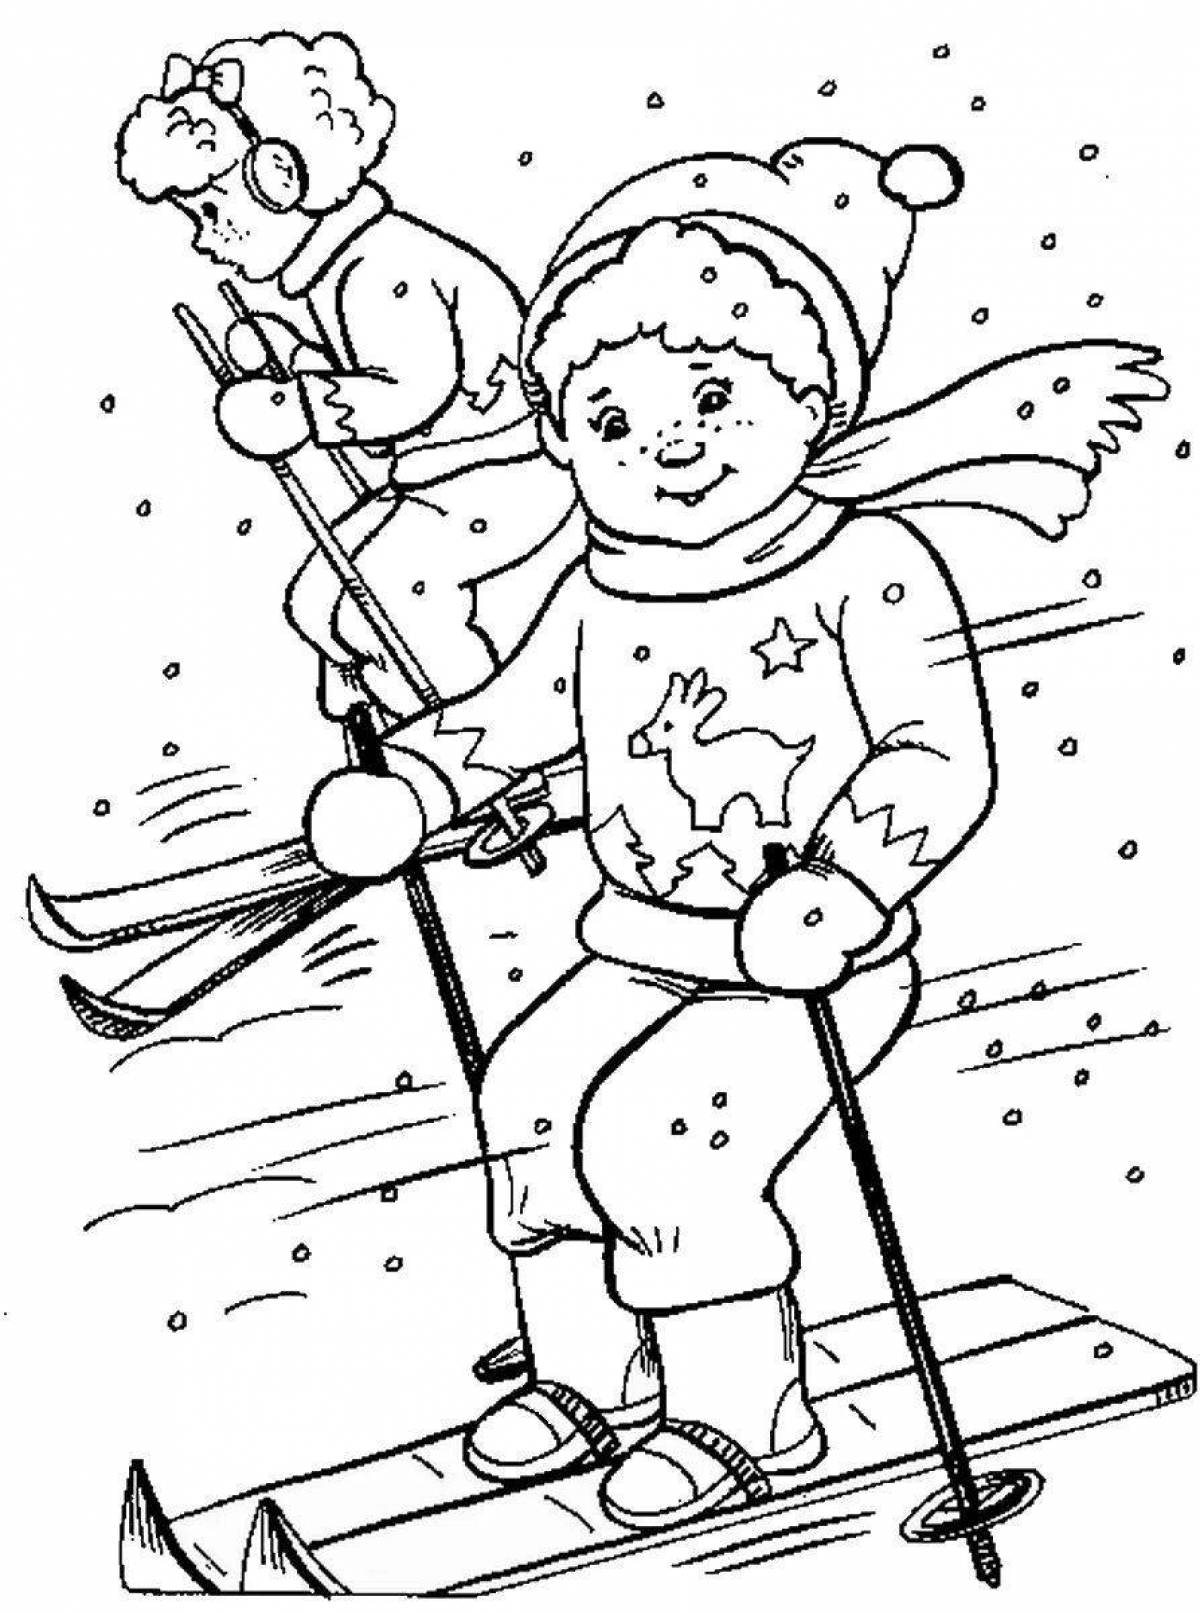 Удивительная раскраска для дошкольников: катание на лыжах